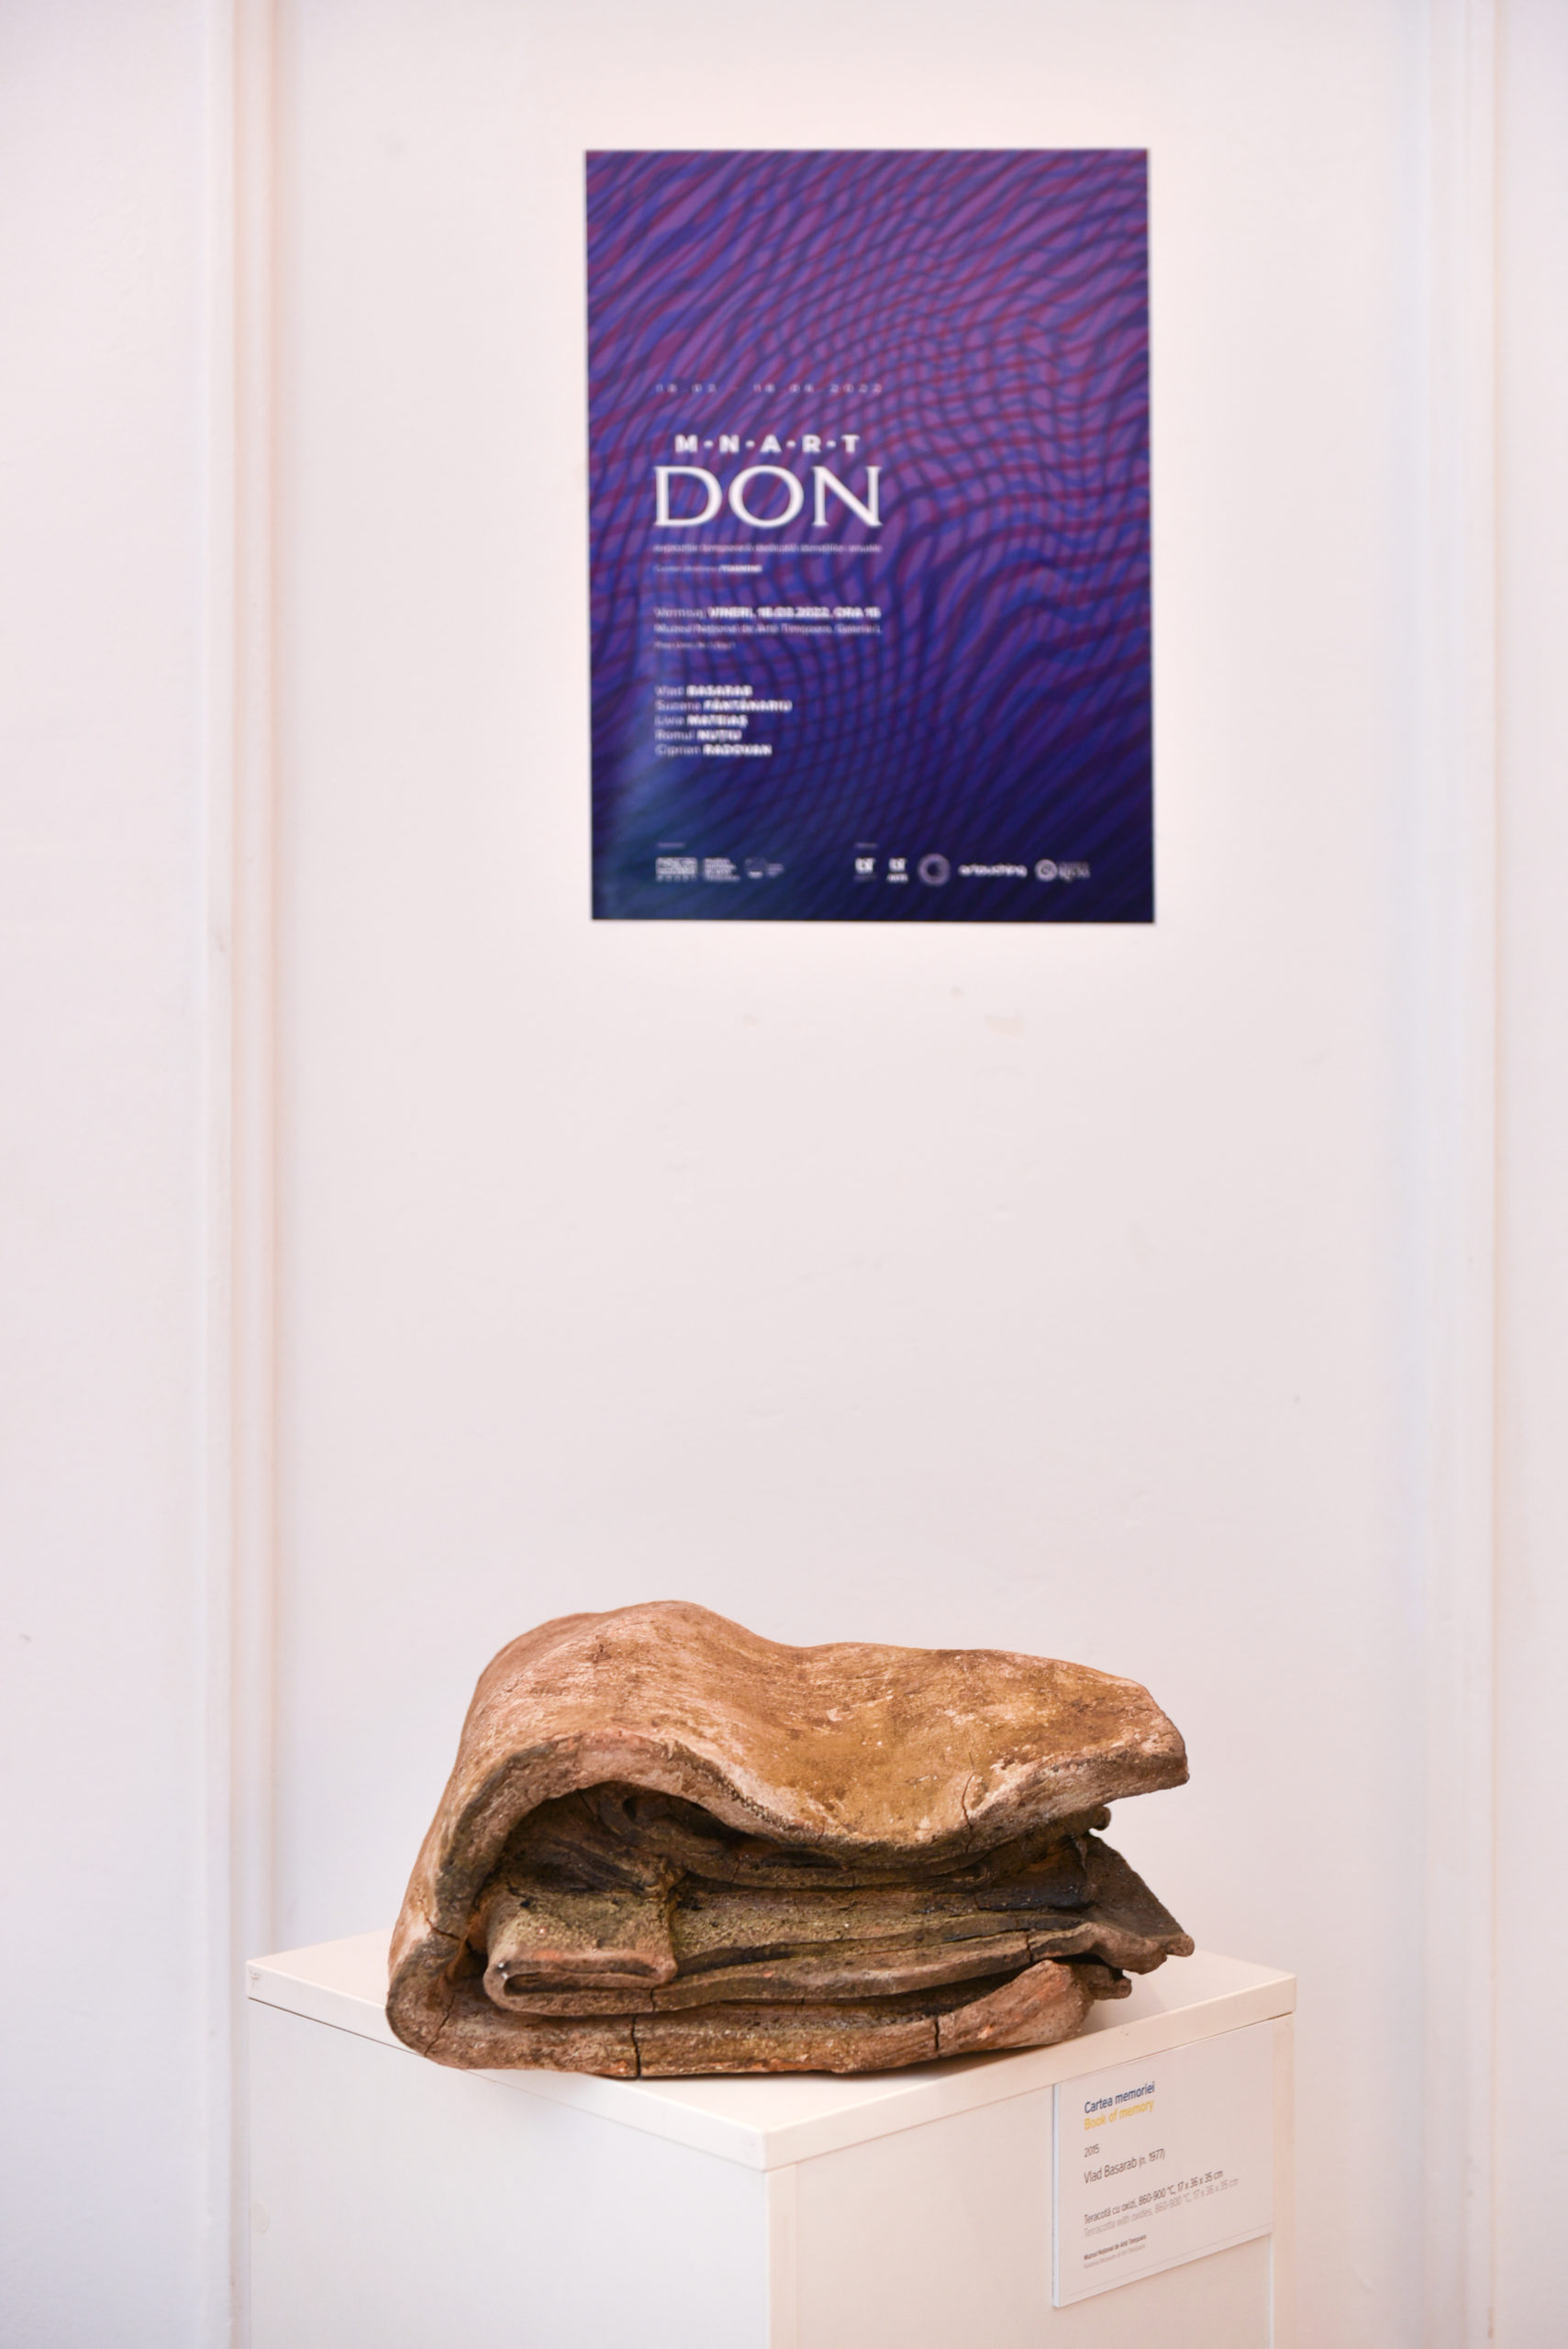 MNArT Don – expoziție dedicată donațiilor anuale